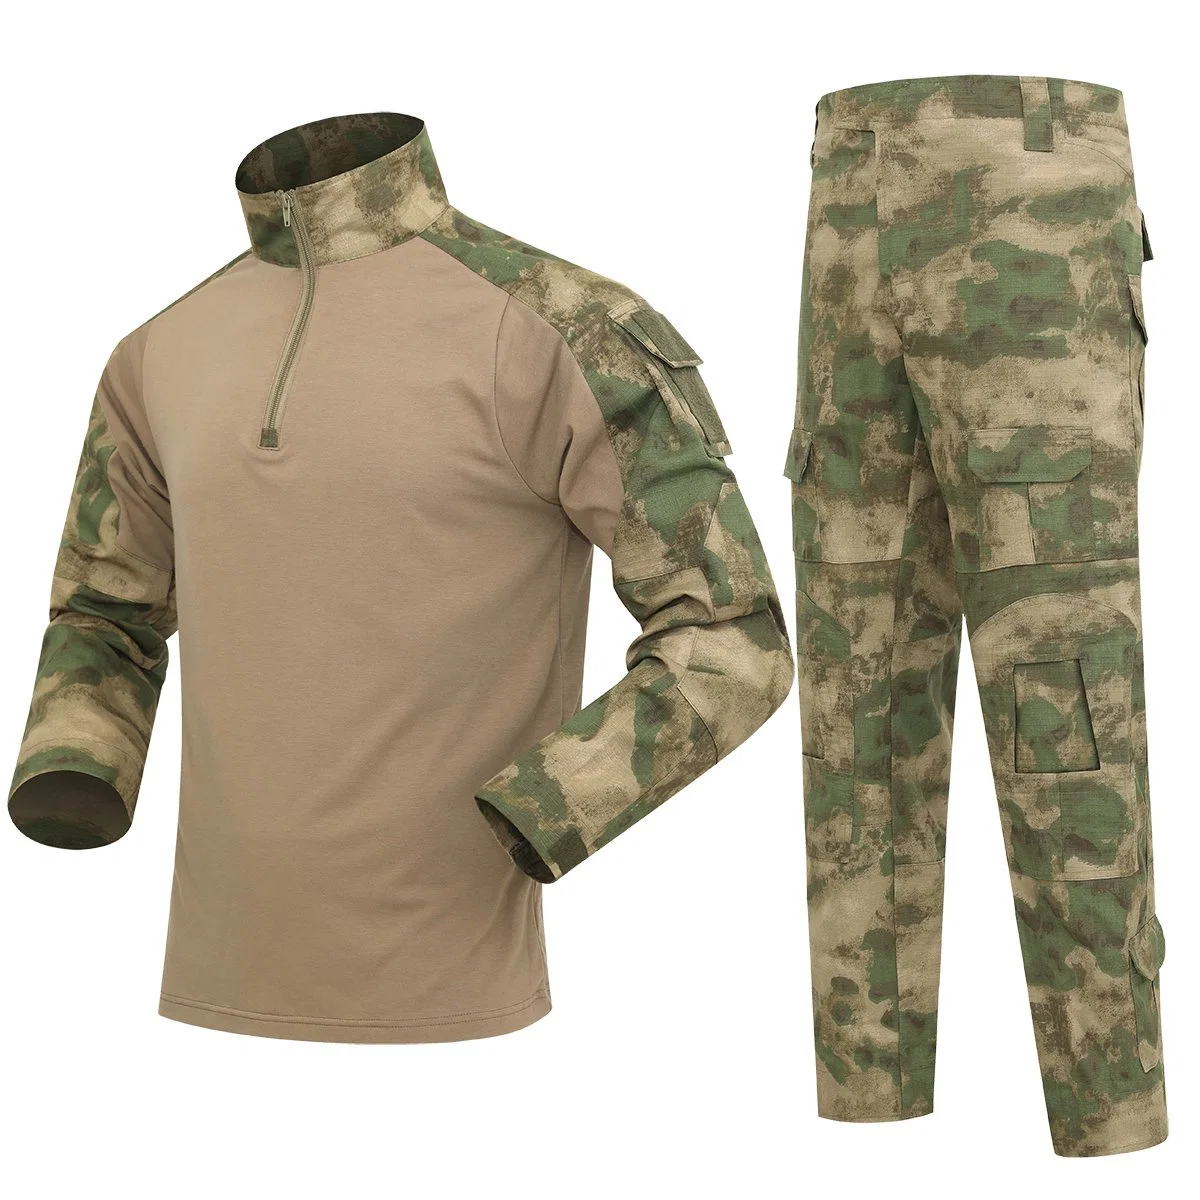 Военная одежда Camouflage Combat с длинным рукавом футболка и. Брюки Тактический XXXL Мужская форма полиции